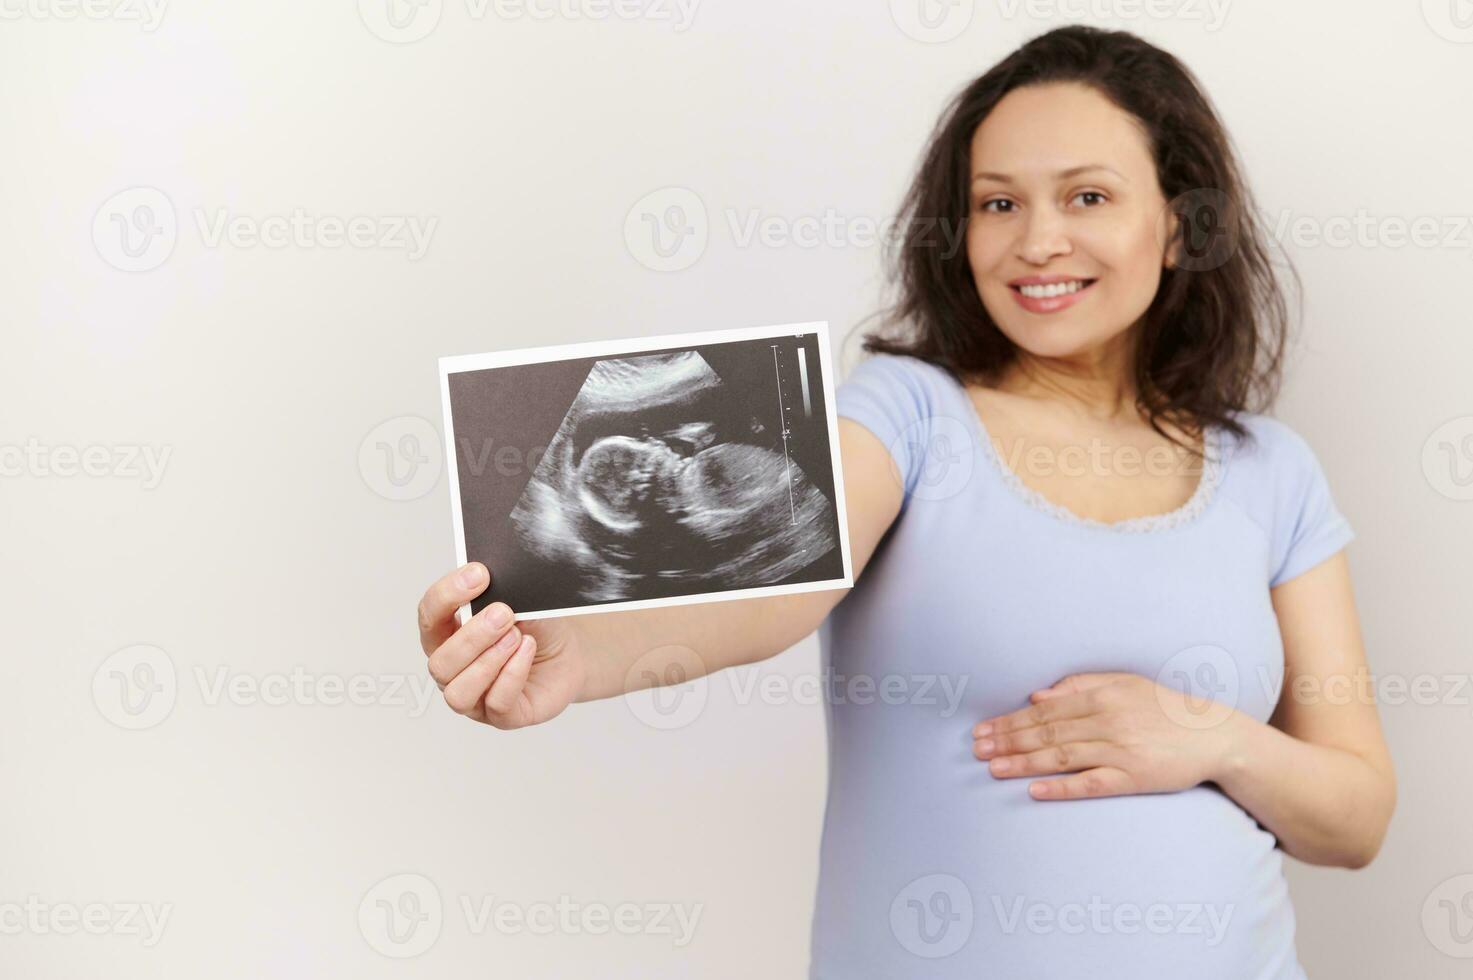 atención en ultrasonido escanear imagen, bebé sonografía en el mano de un sonriente embarazada mujer, aislado en blanco antecedentes foto